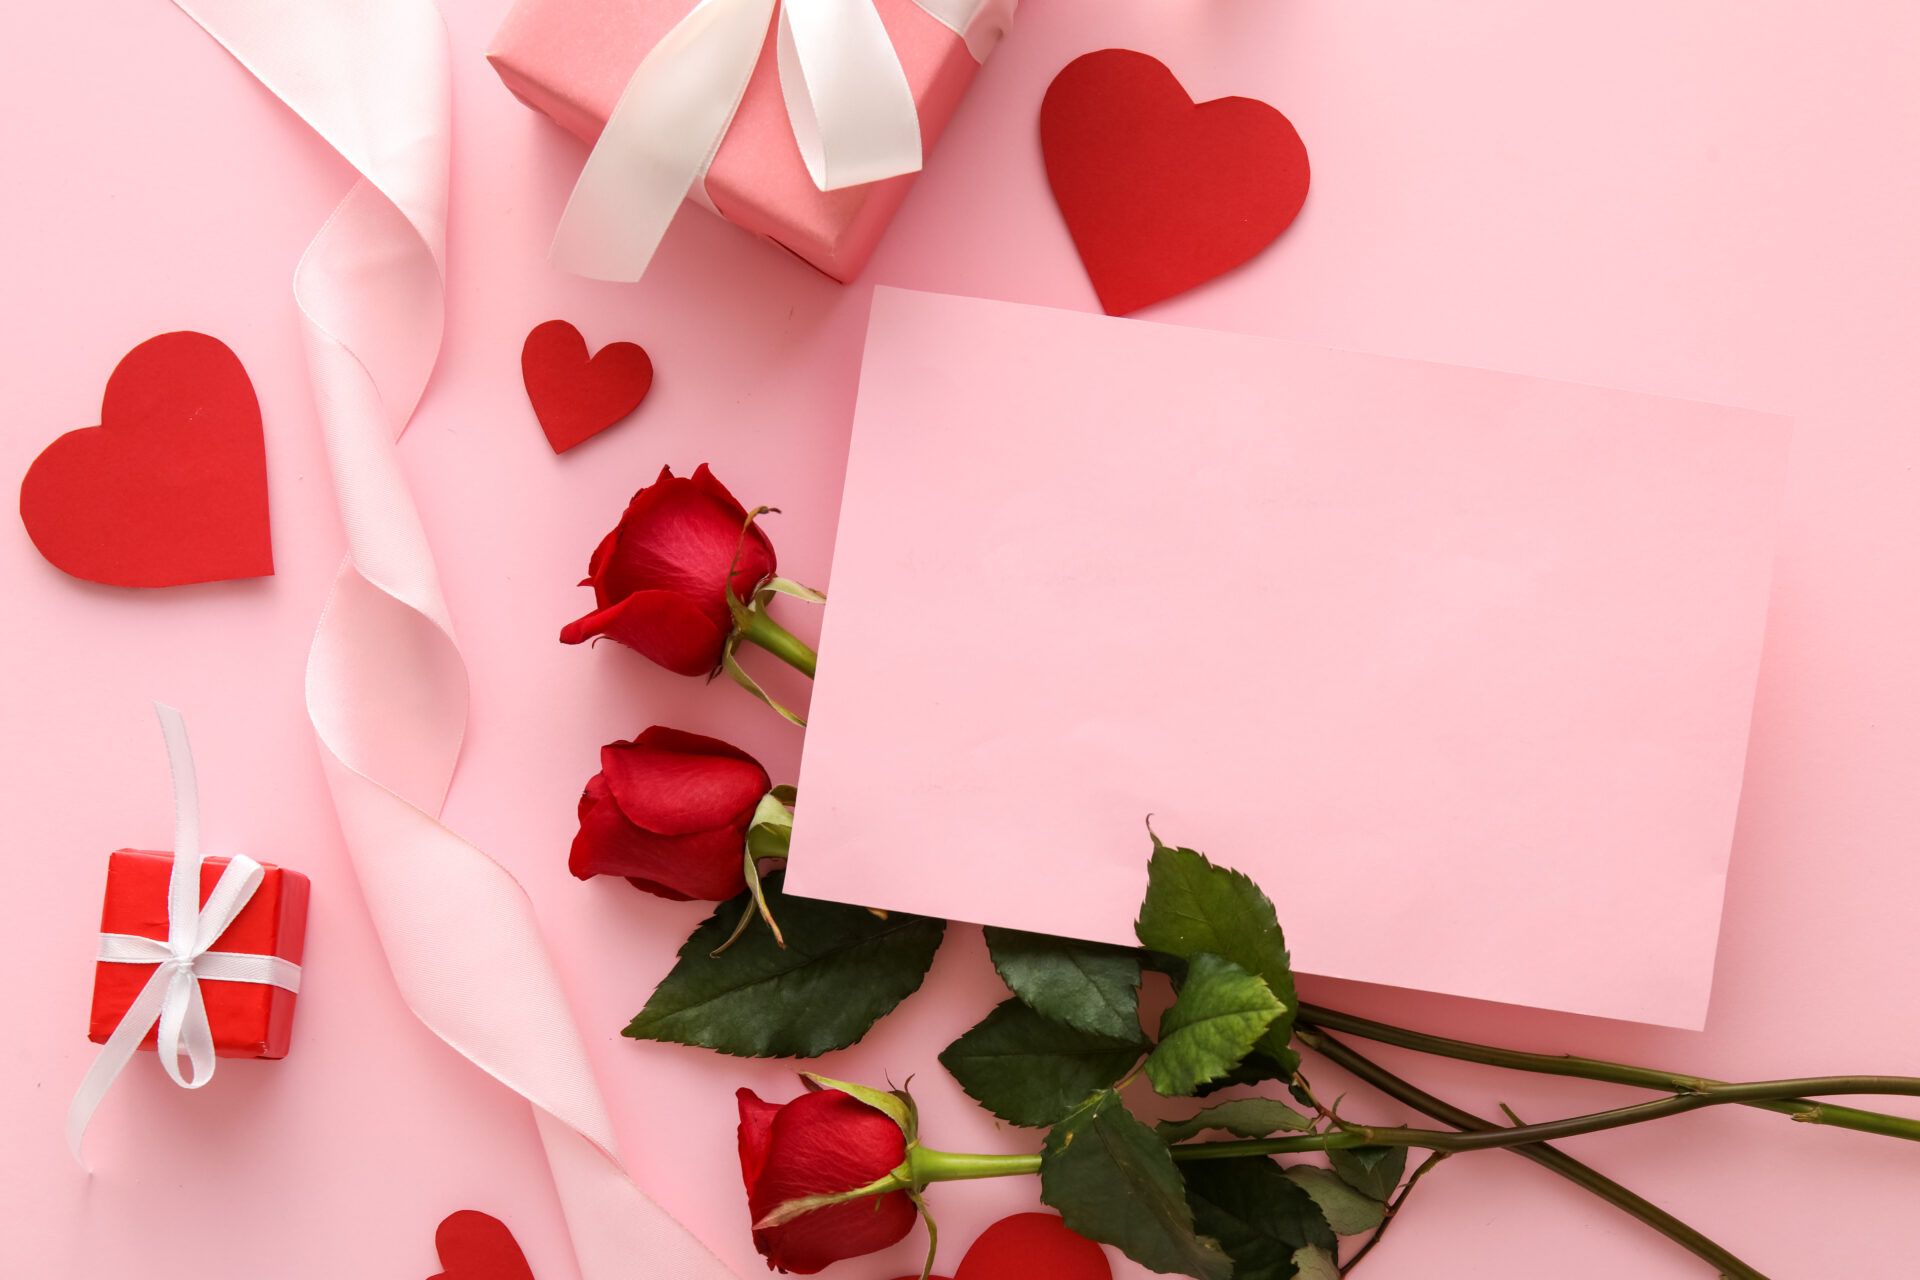 バレンタインイメージのピンクのボックスに赤いバラとハート、白いリボン